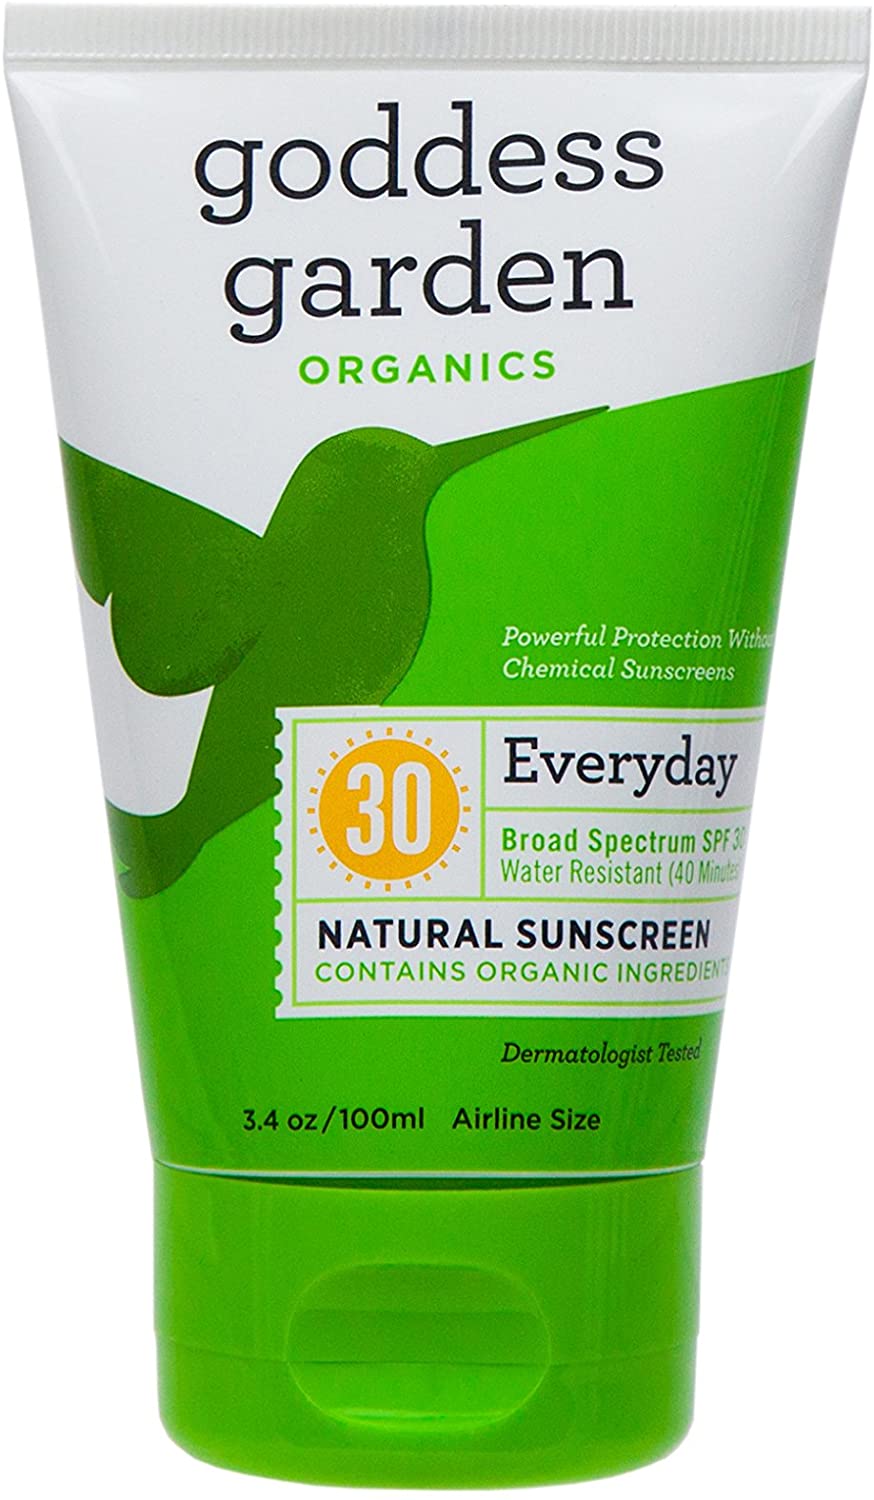 Goddess Garden Organics: Everyday SPF 30 Natural Sunscreen